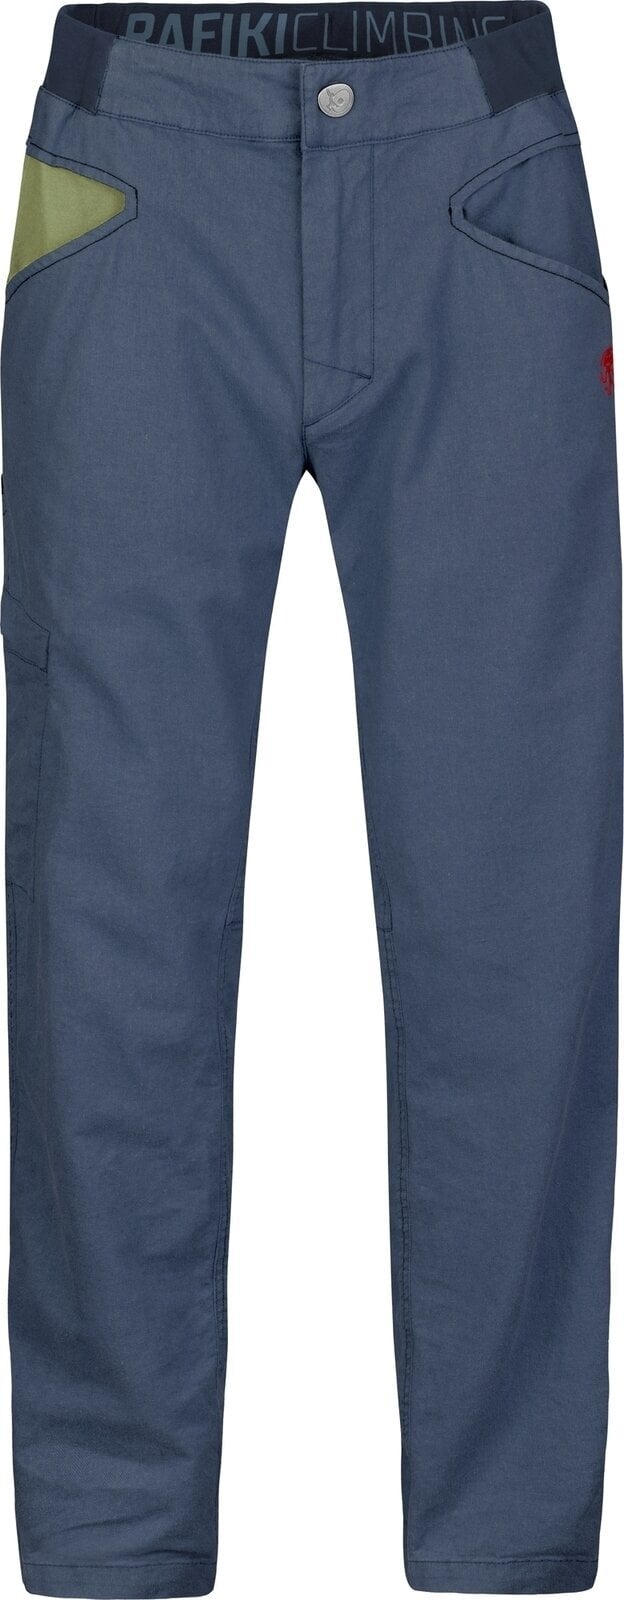 Spodnie outdoorowe Rafiki Grip Man Pants India Ink L Spodnie outdoorowe